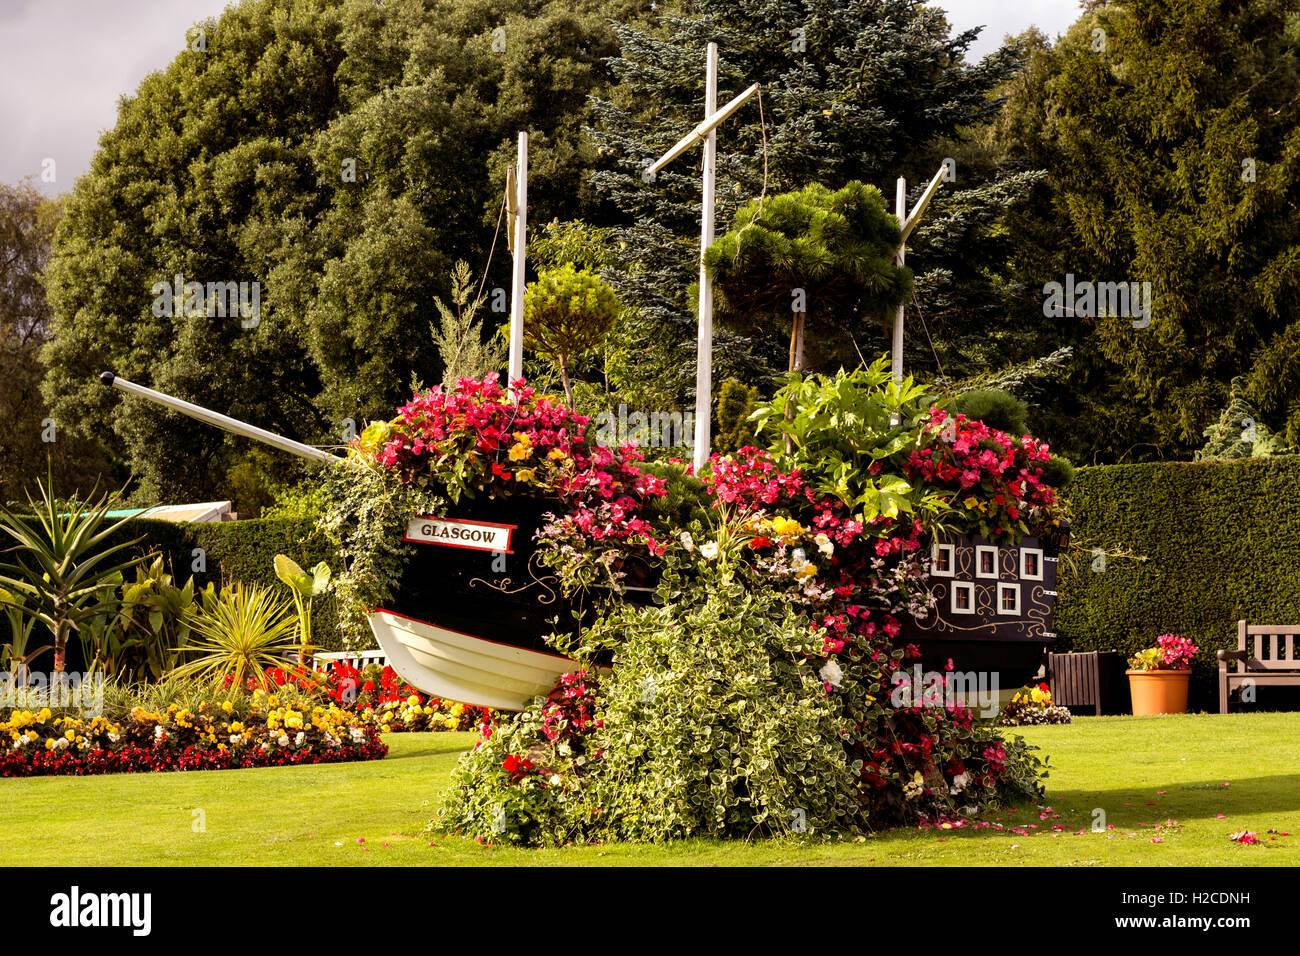 Glasgow Boat with Flowers in Pollok Park Gardens. GLASGOW, SCOTLAND Stock Photo